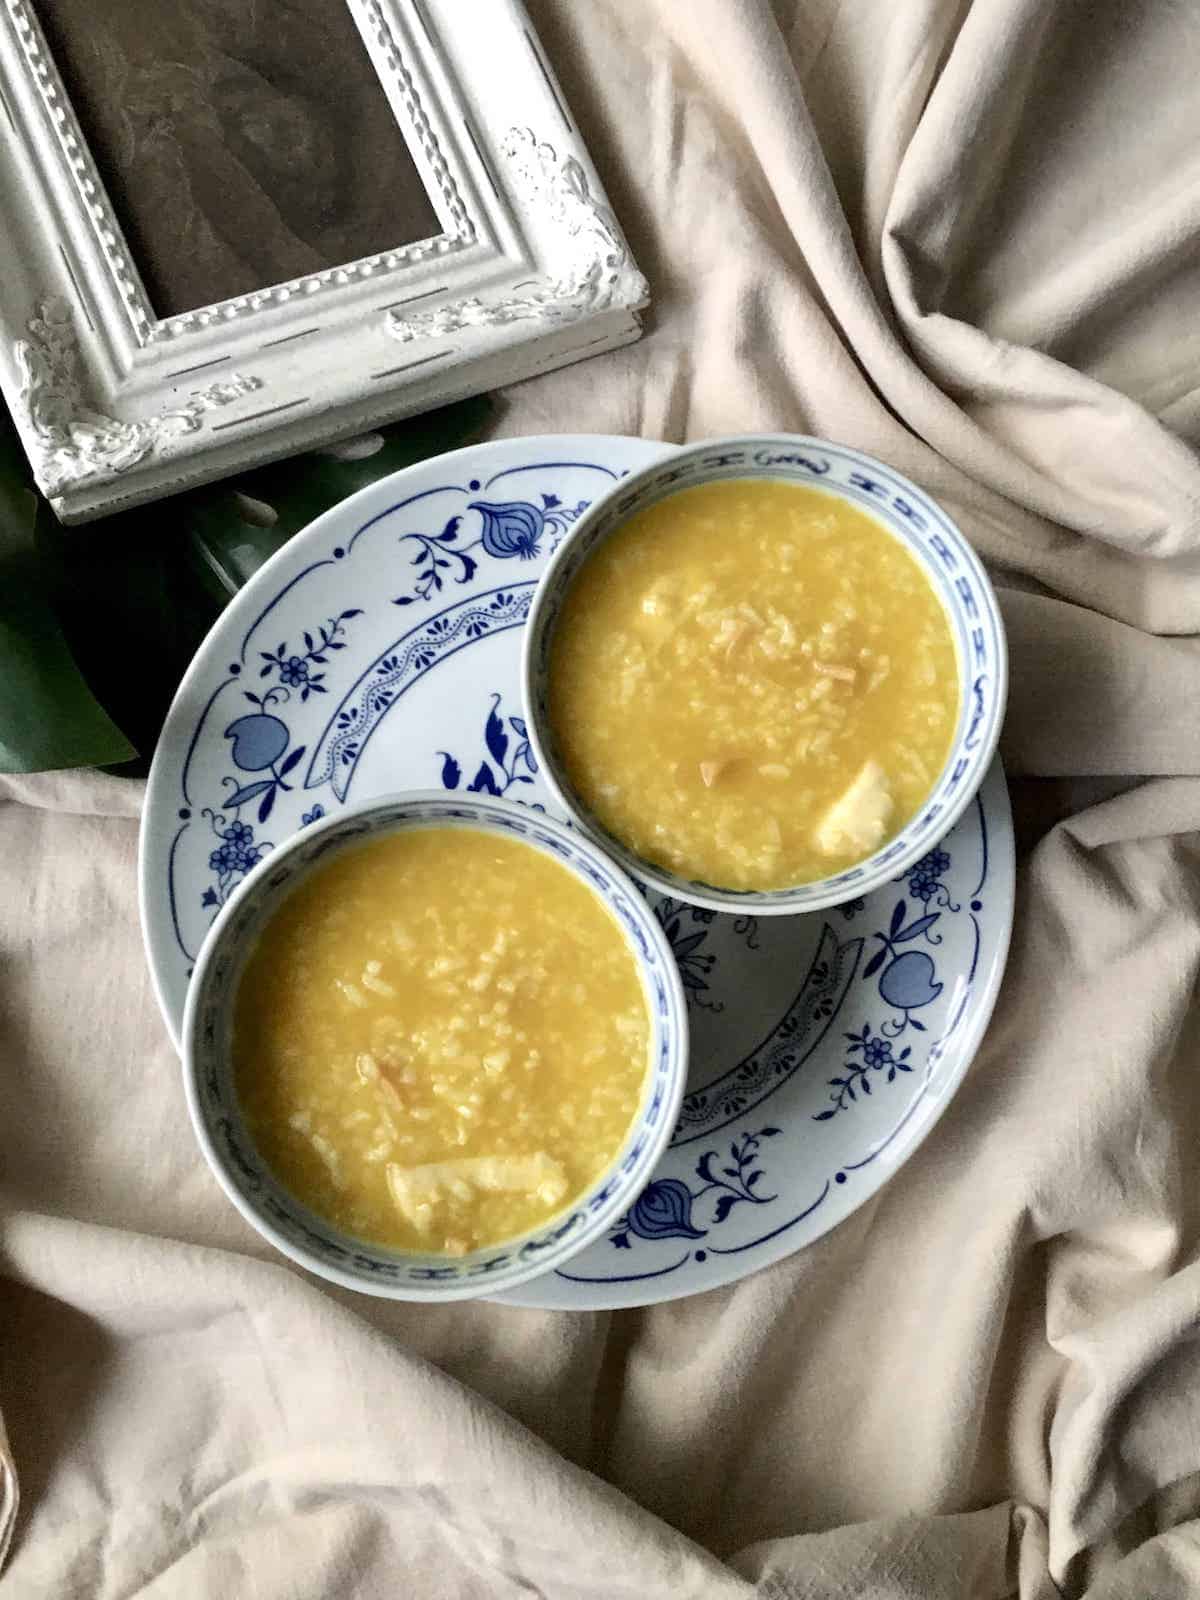 2 bowls of golden pumpkin fish porridge